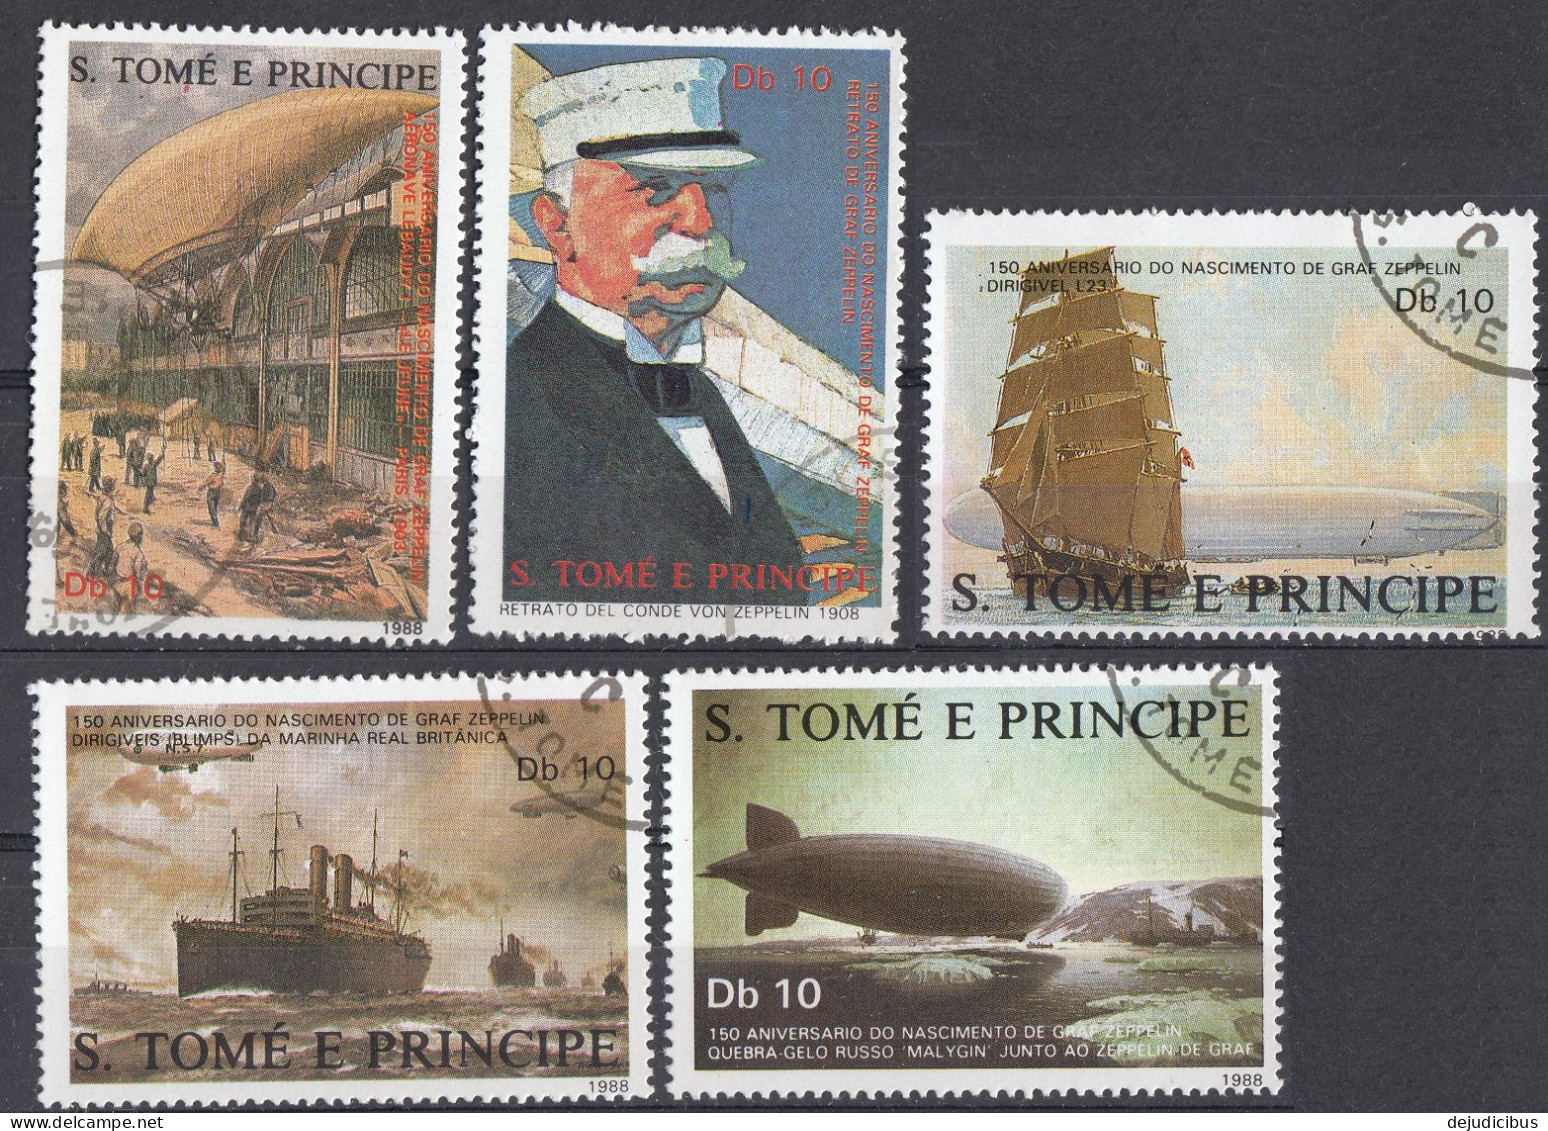 S. TOME' E PRINCIPE - 1988 - Serie Completa Di 5 Valori Usati: Yvert 915/919 - Sao Tome Et Principe